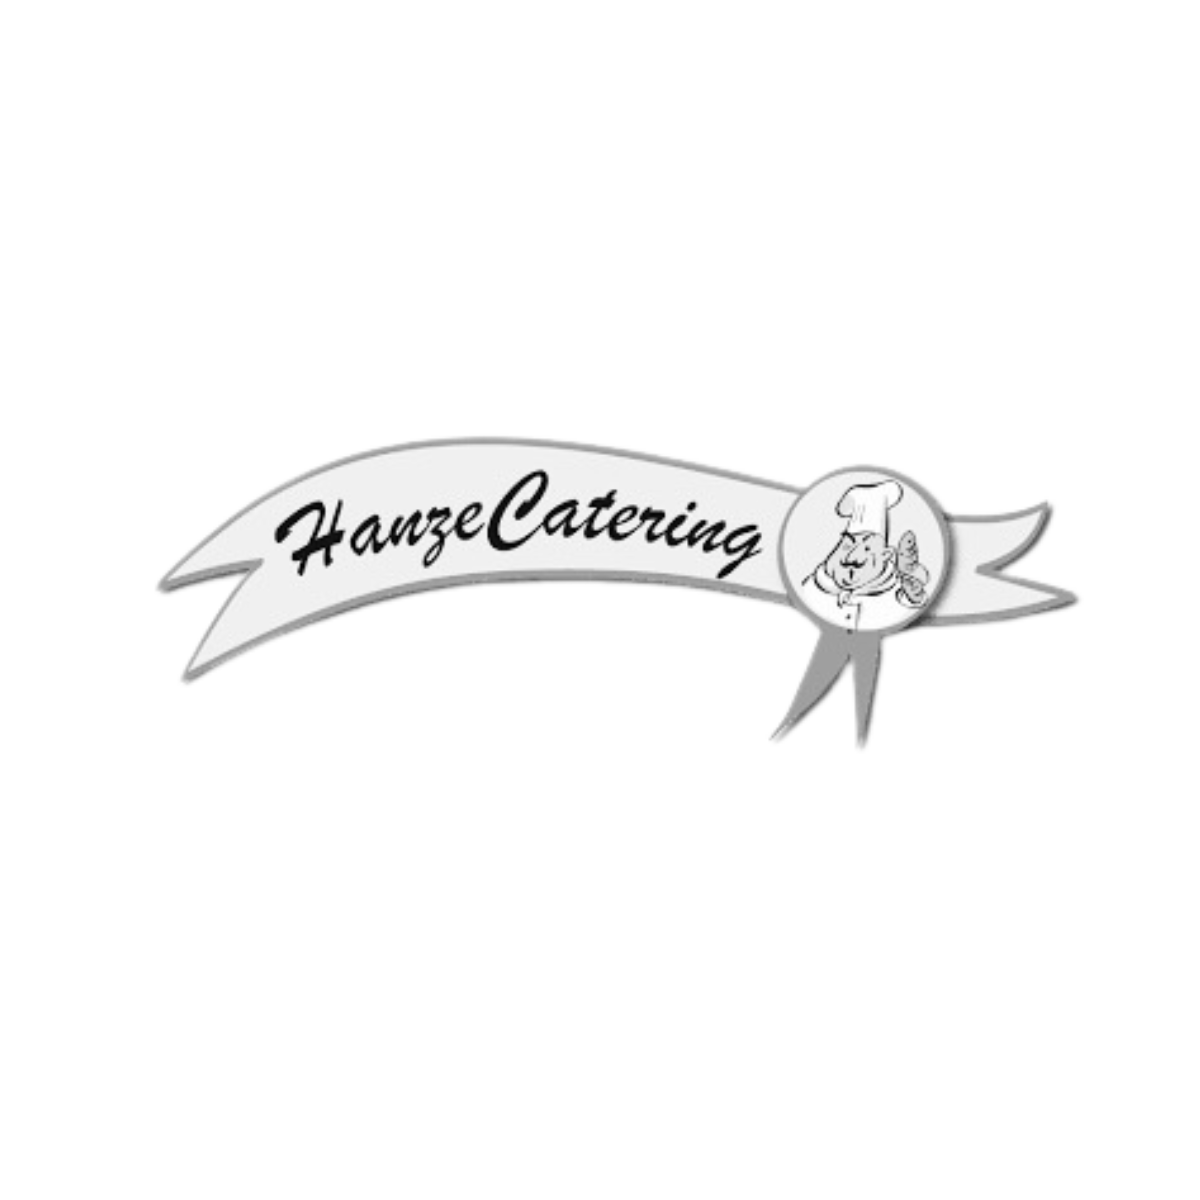 logo bedrijf Catering - hanzecatering